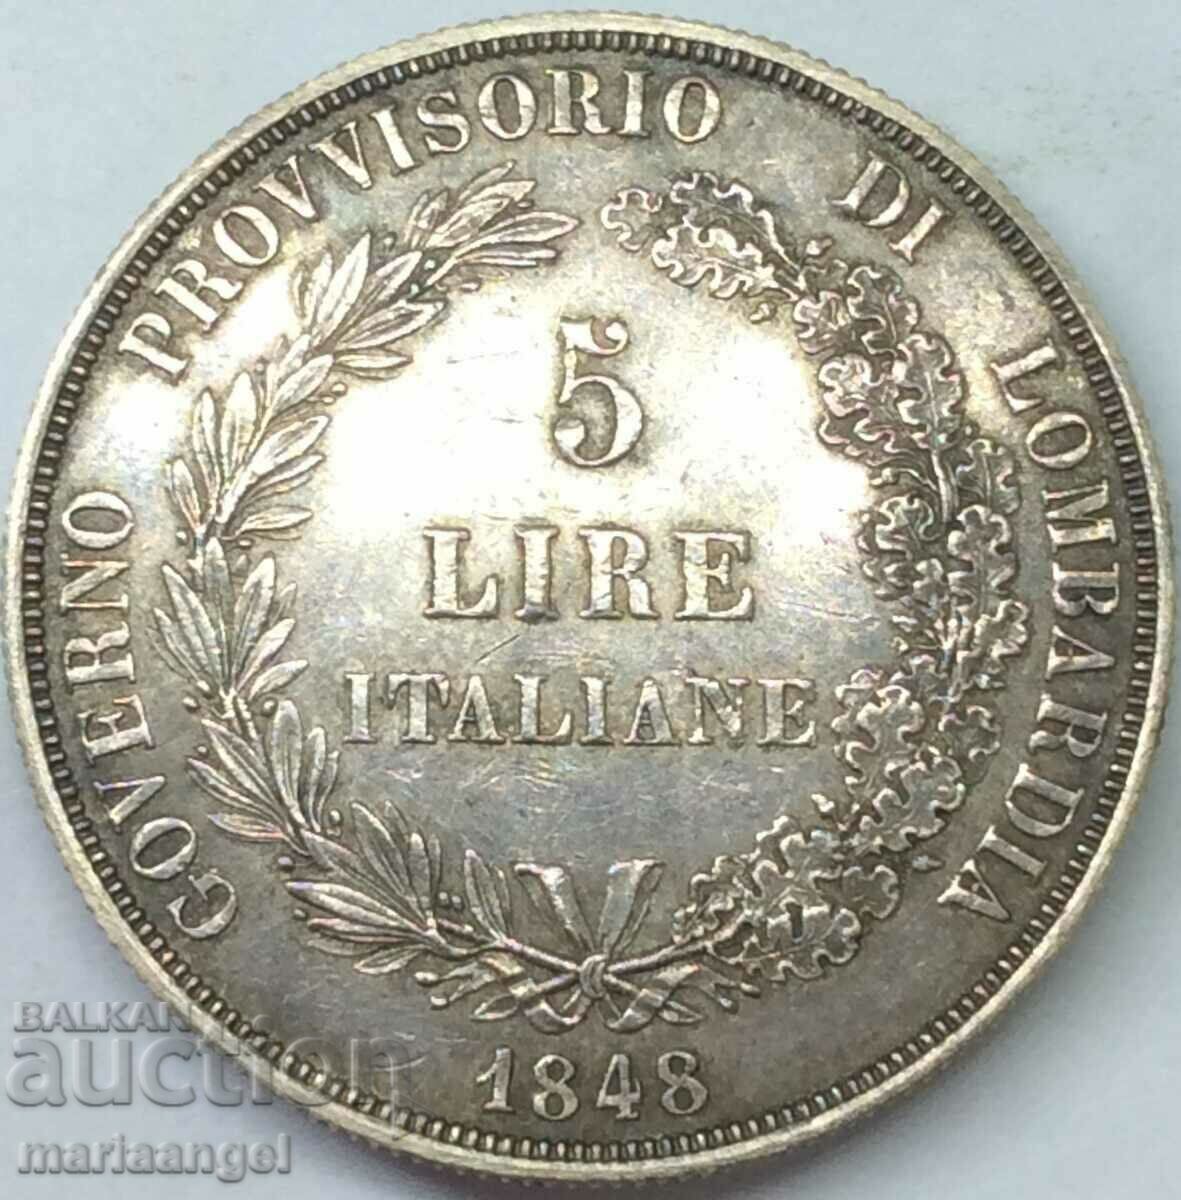 Lombardy Venice 5 lira 1848 Italy 25g Patina ασήμι